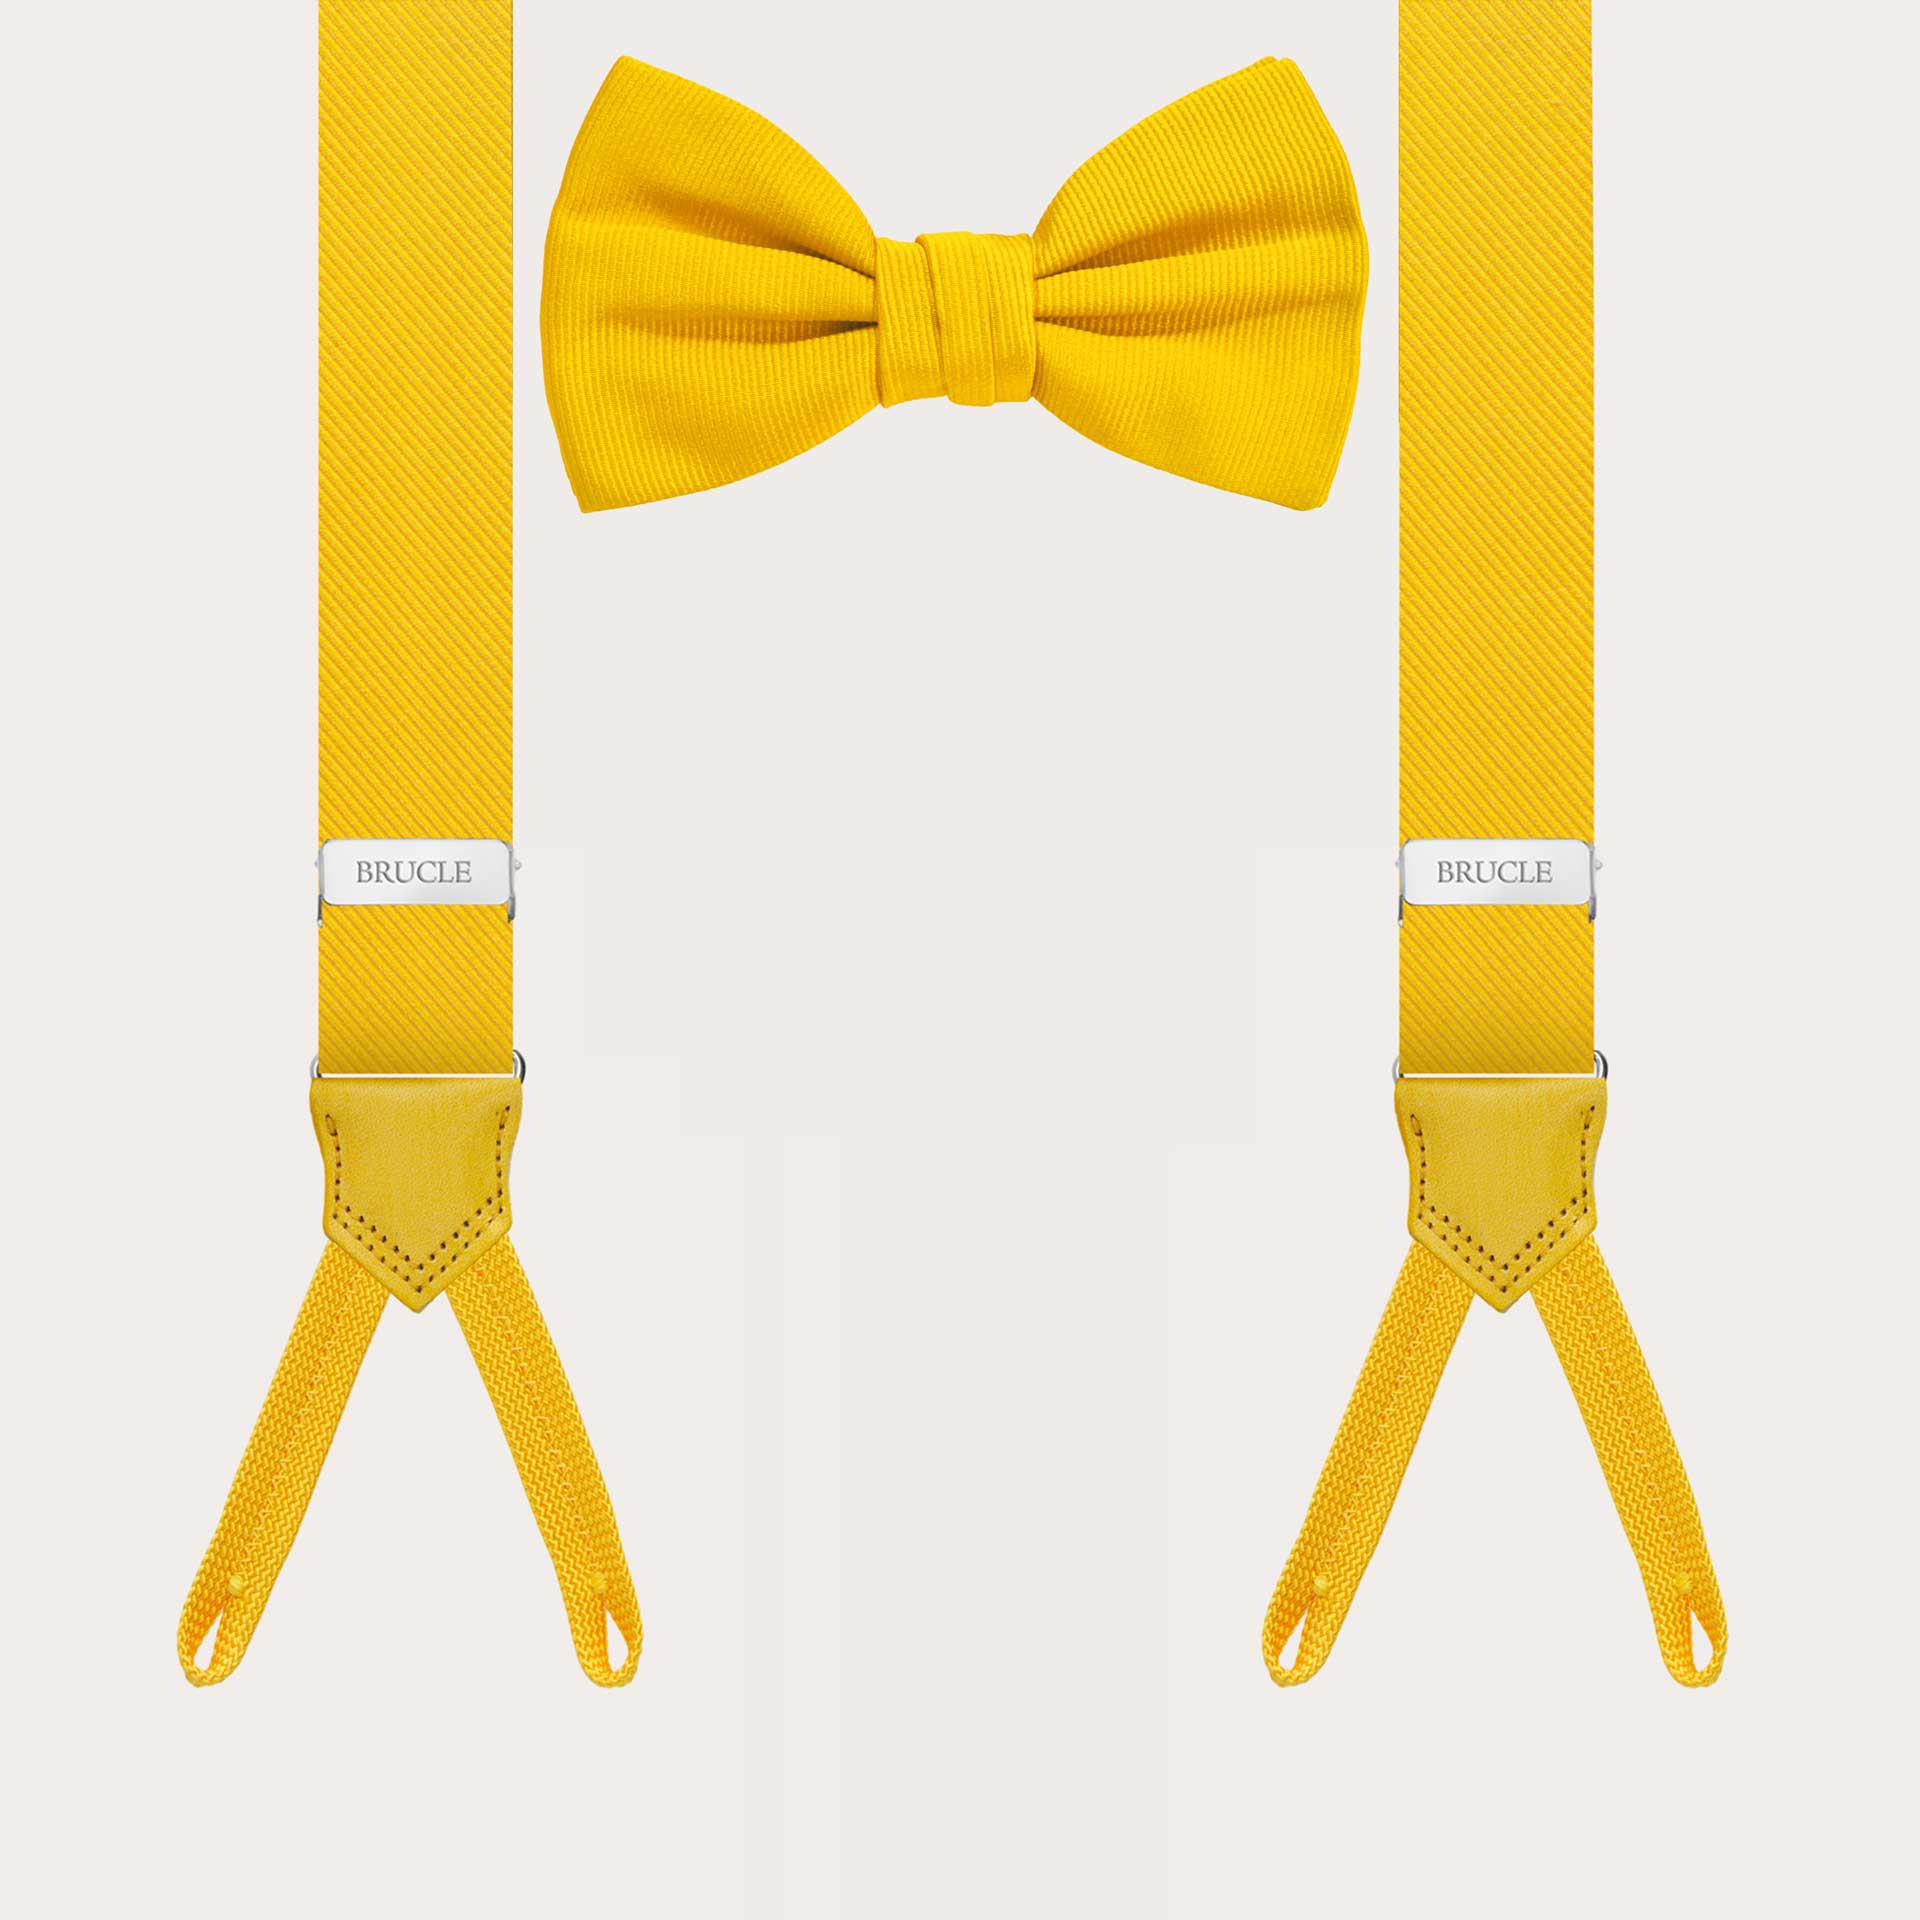 Koordiniertes gelbes Set aus schmalen Hosenträgern für Knöpfe und Seidenfliege.